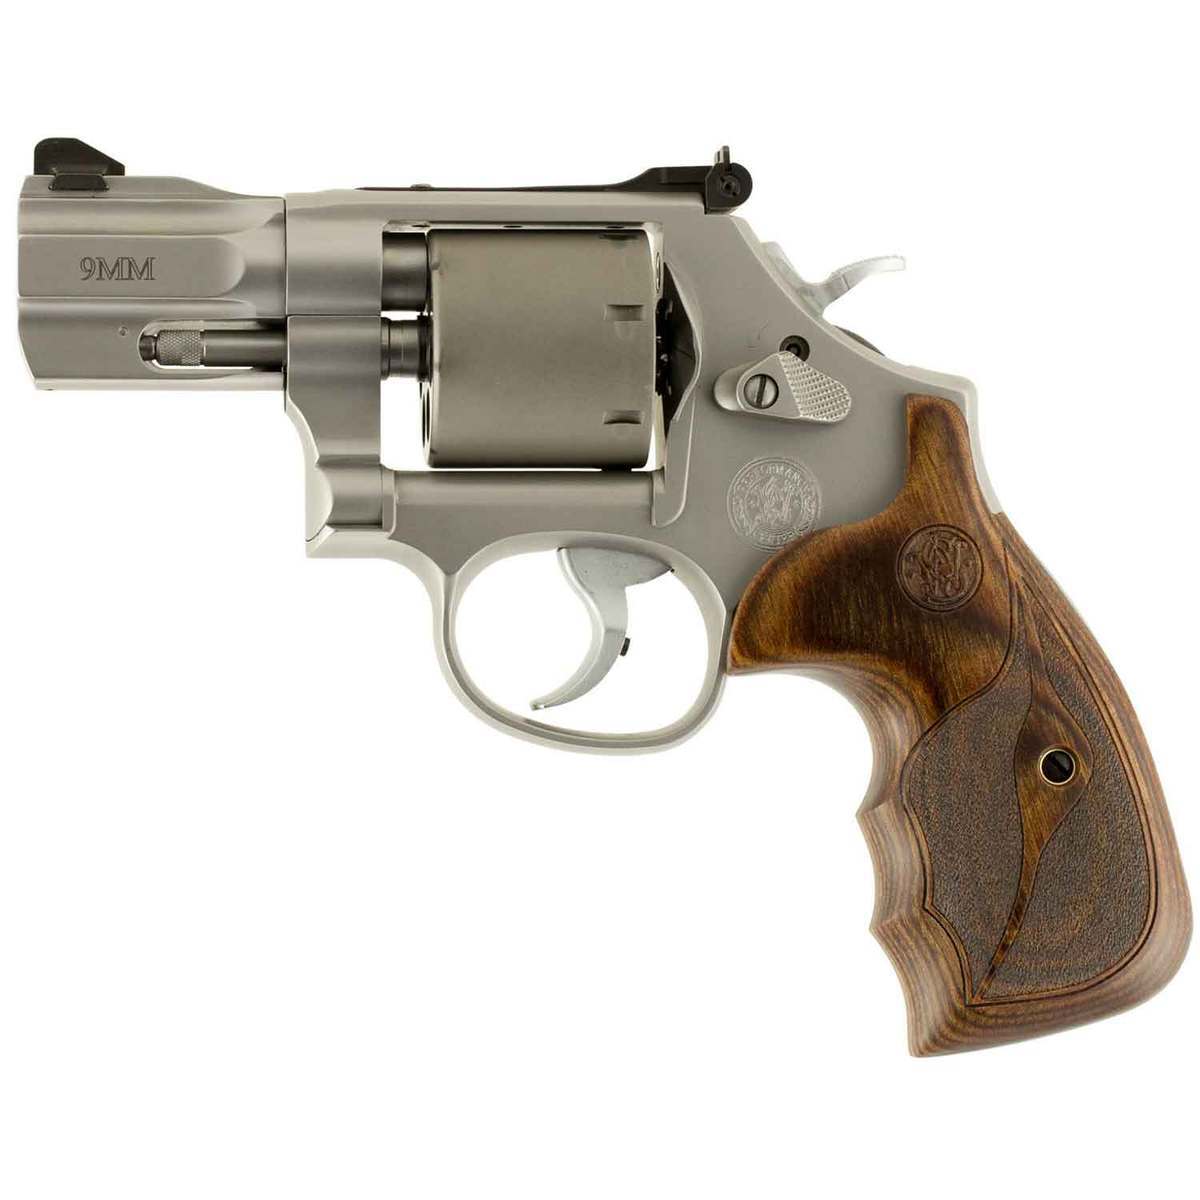 Smith Wesson Performance Center Model 986 9mm Luger 25in Stainless Revolver 7 Rounds 1476938 2 ?context=bWFzdGVyfGltYWdlc3w2NzQ2M3xpbWFnZS9qcGVnfGltYWdlcy9oMjAvaDU1Lzk3MTg3MTQ0MzM1NjYuanBnfGI2NjA2NjU4MTViNzU4ZjVmMjZmNzNjMGY2NmI2MzkyNTkwMTM3OTJhMTY3ZDllYTYzMWJiOTI0Yzg0OTkyMjE